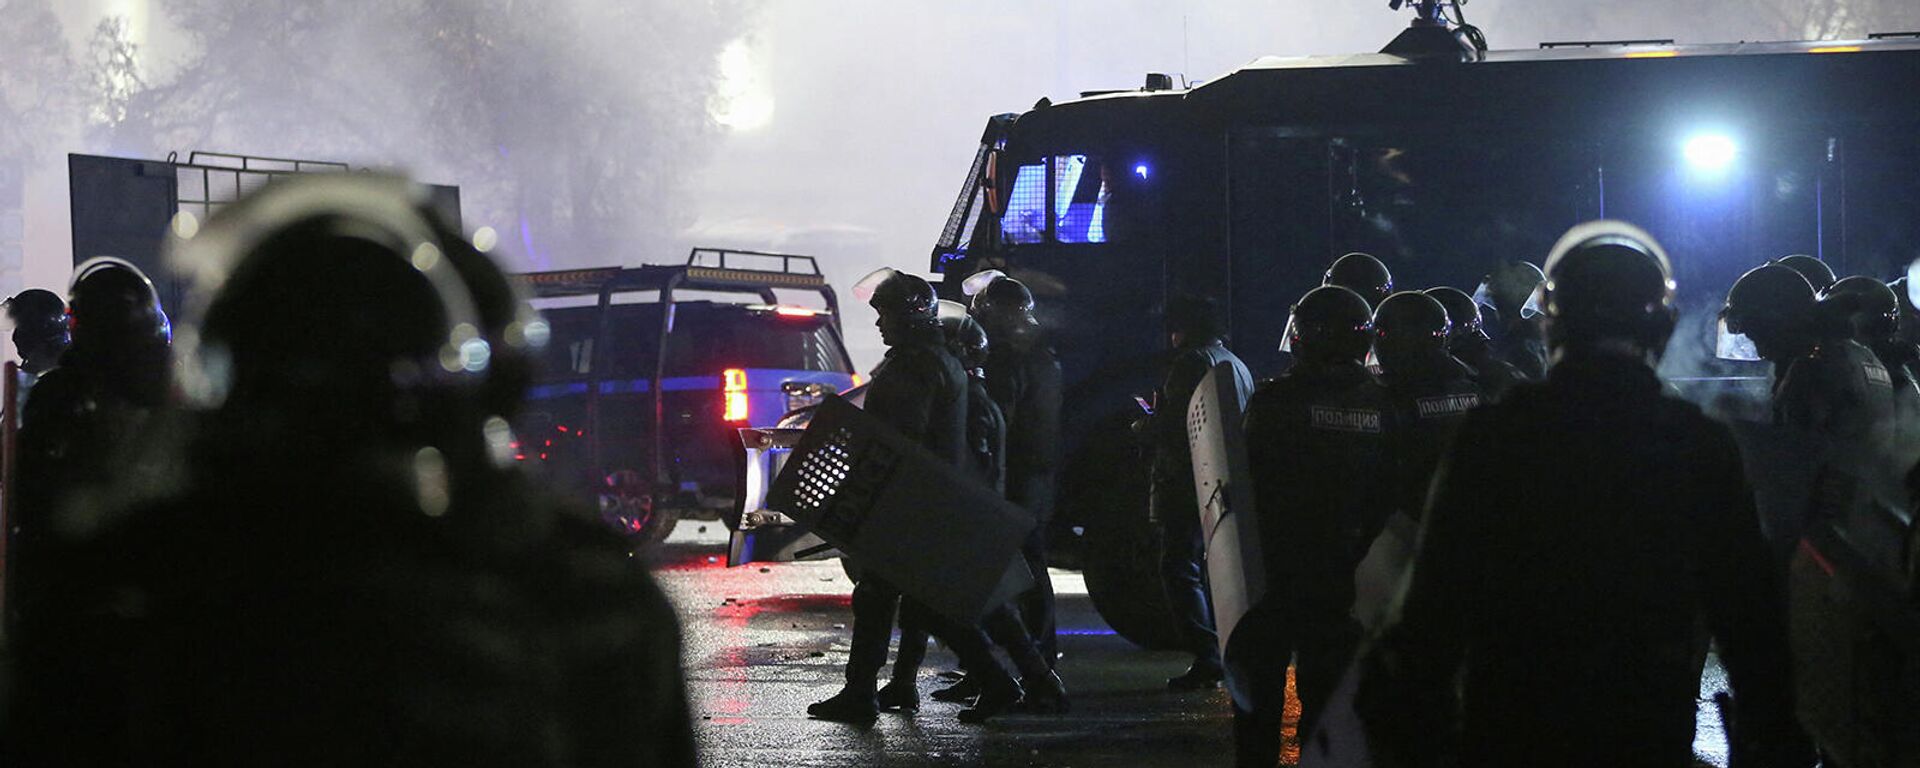 Казахстанские правоохранительные органы на площади во время акции протеста против повышения стоимости сжиженного нефтяного газа (5 января 2022). Алматы - Sputnik Армения, 1920, 05.01.2022